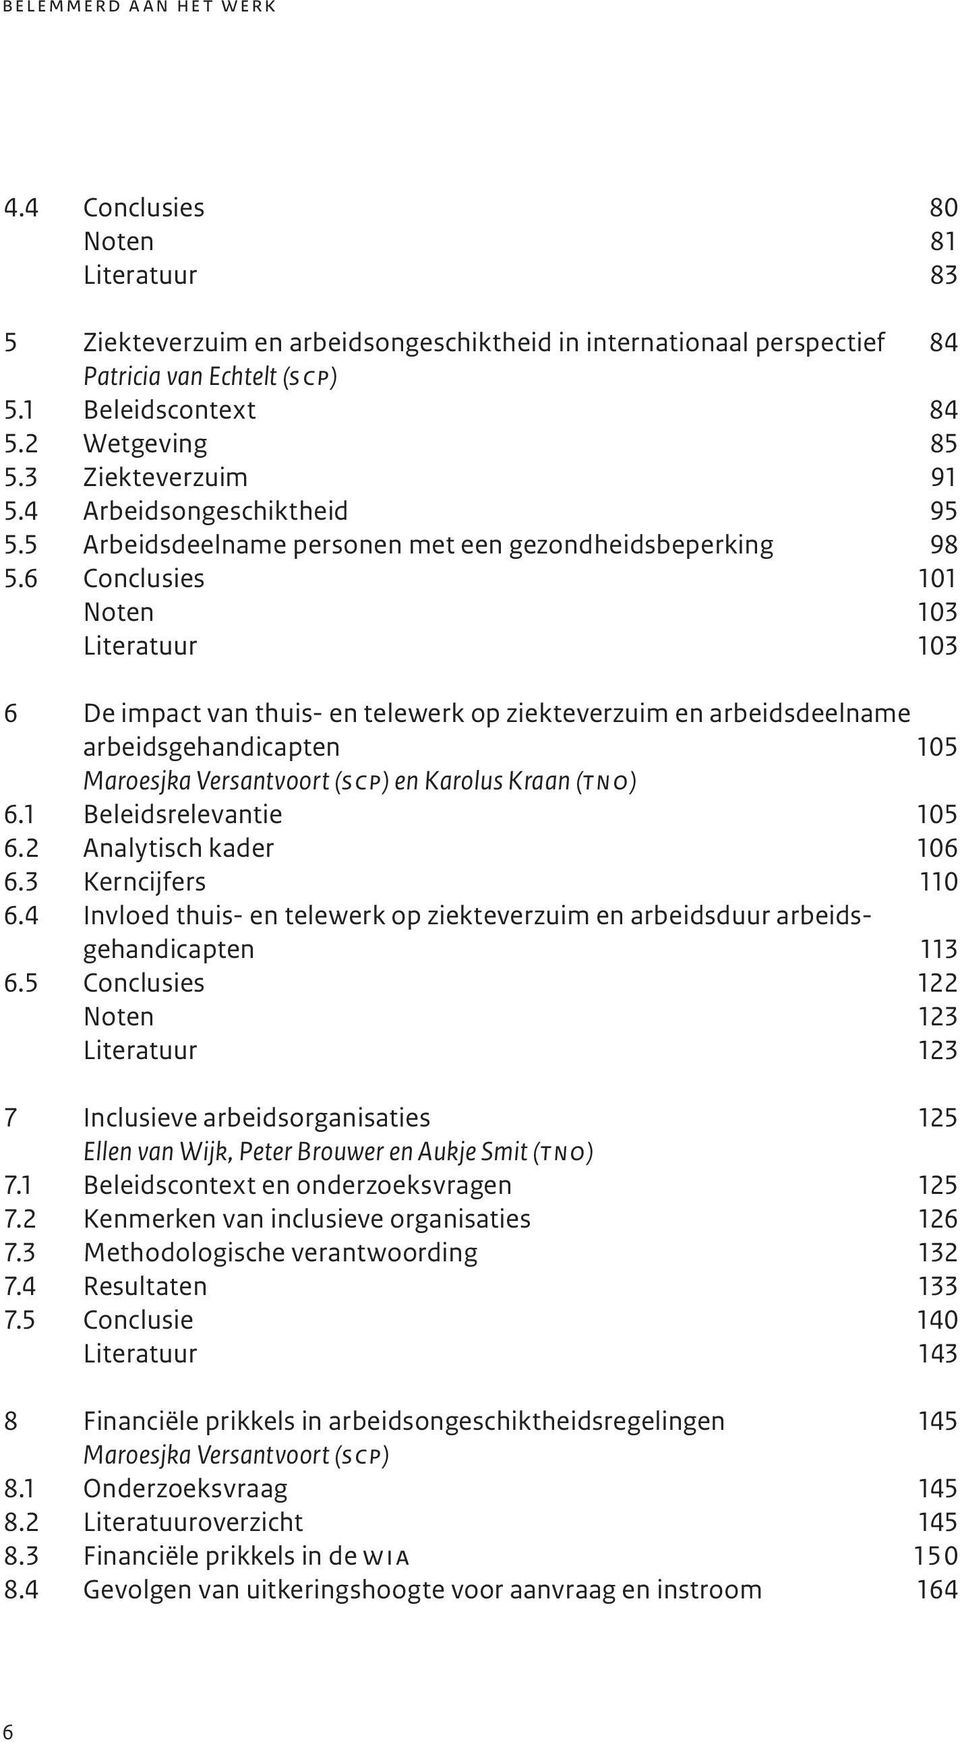 6 Conclusies 101 Noten 103 Literatuur 103 6 De impact van thuis- en telewerk op ziekteverzuim en arbeidsdeelname arbeidsgehandicapten 105 Maroesjka Versantvoort (scp) en Karolus Kraan (tno) 6.